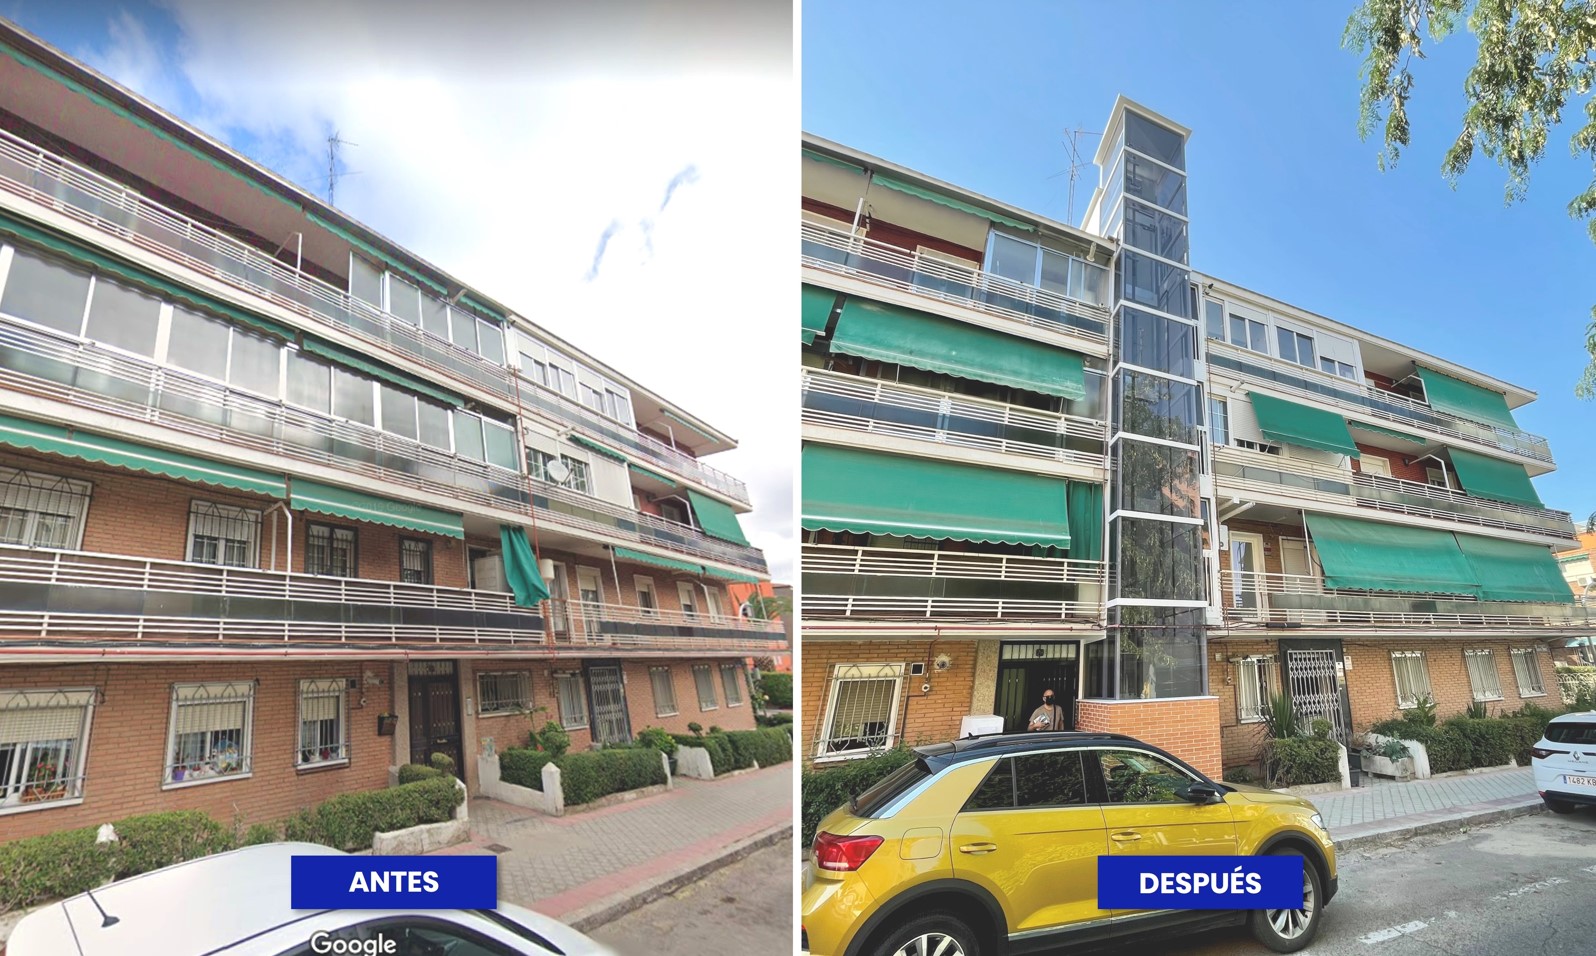 Antes y después de la instalación de un ascensor por la fachada de un bloque de viviendas